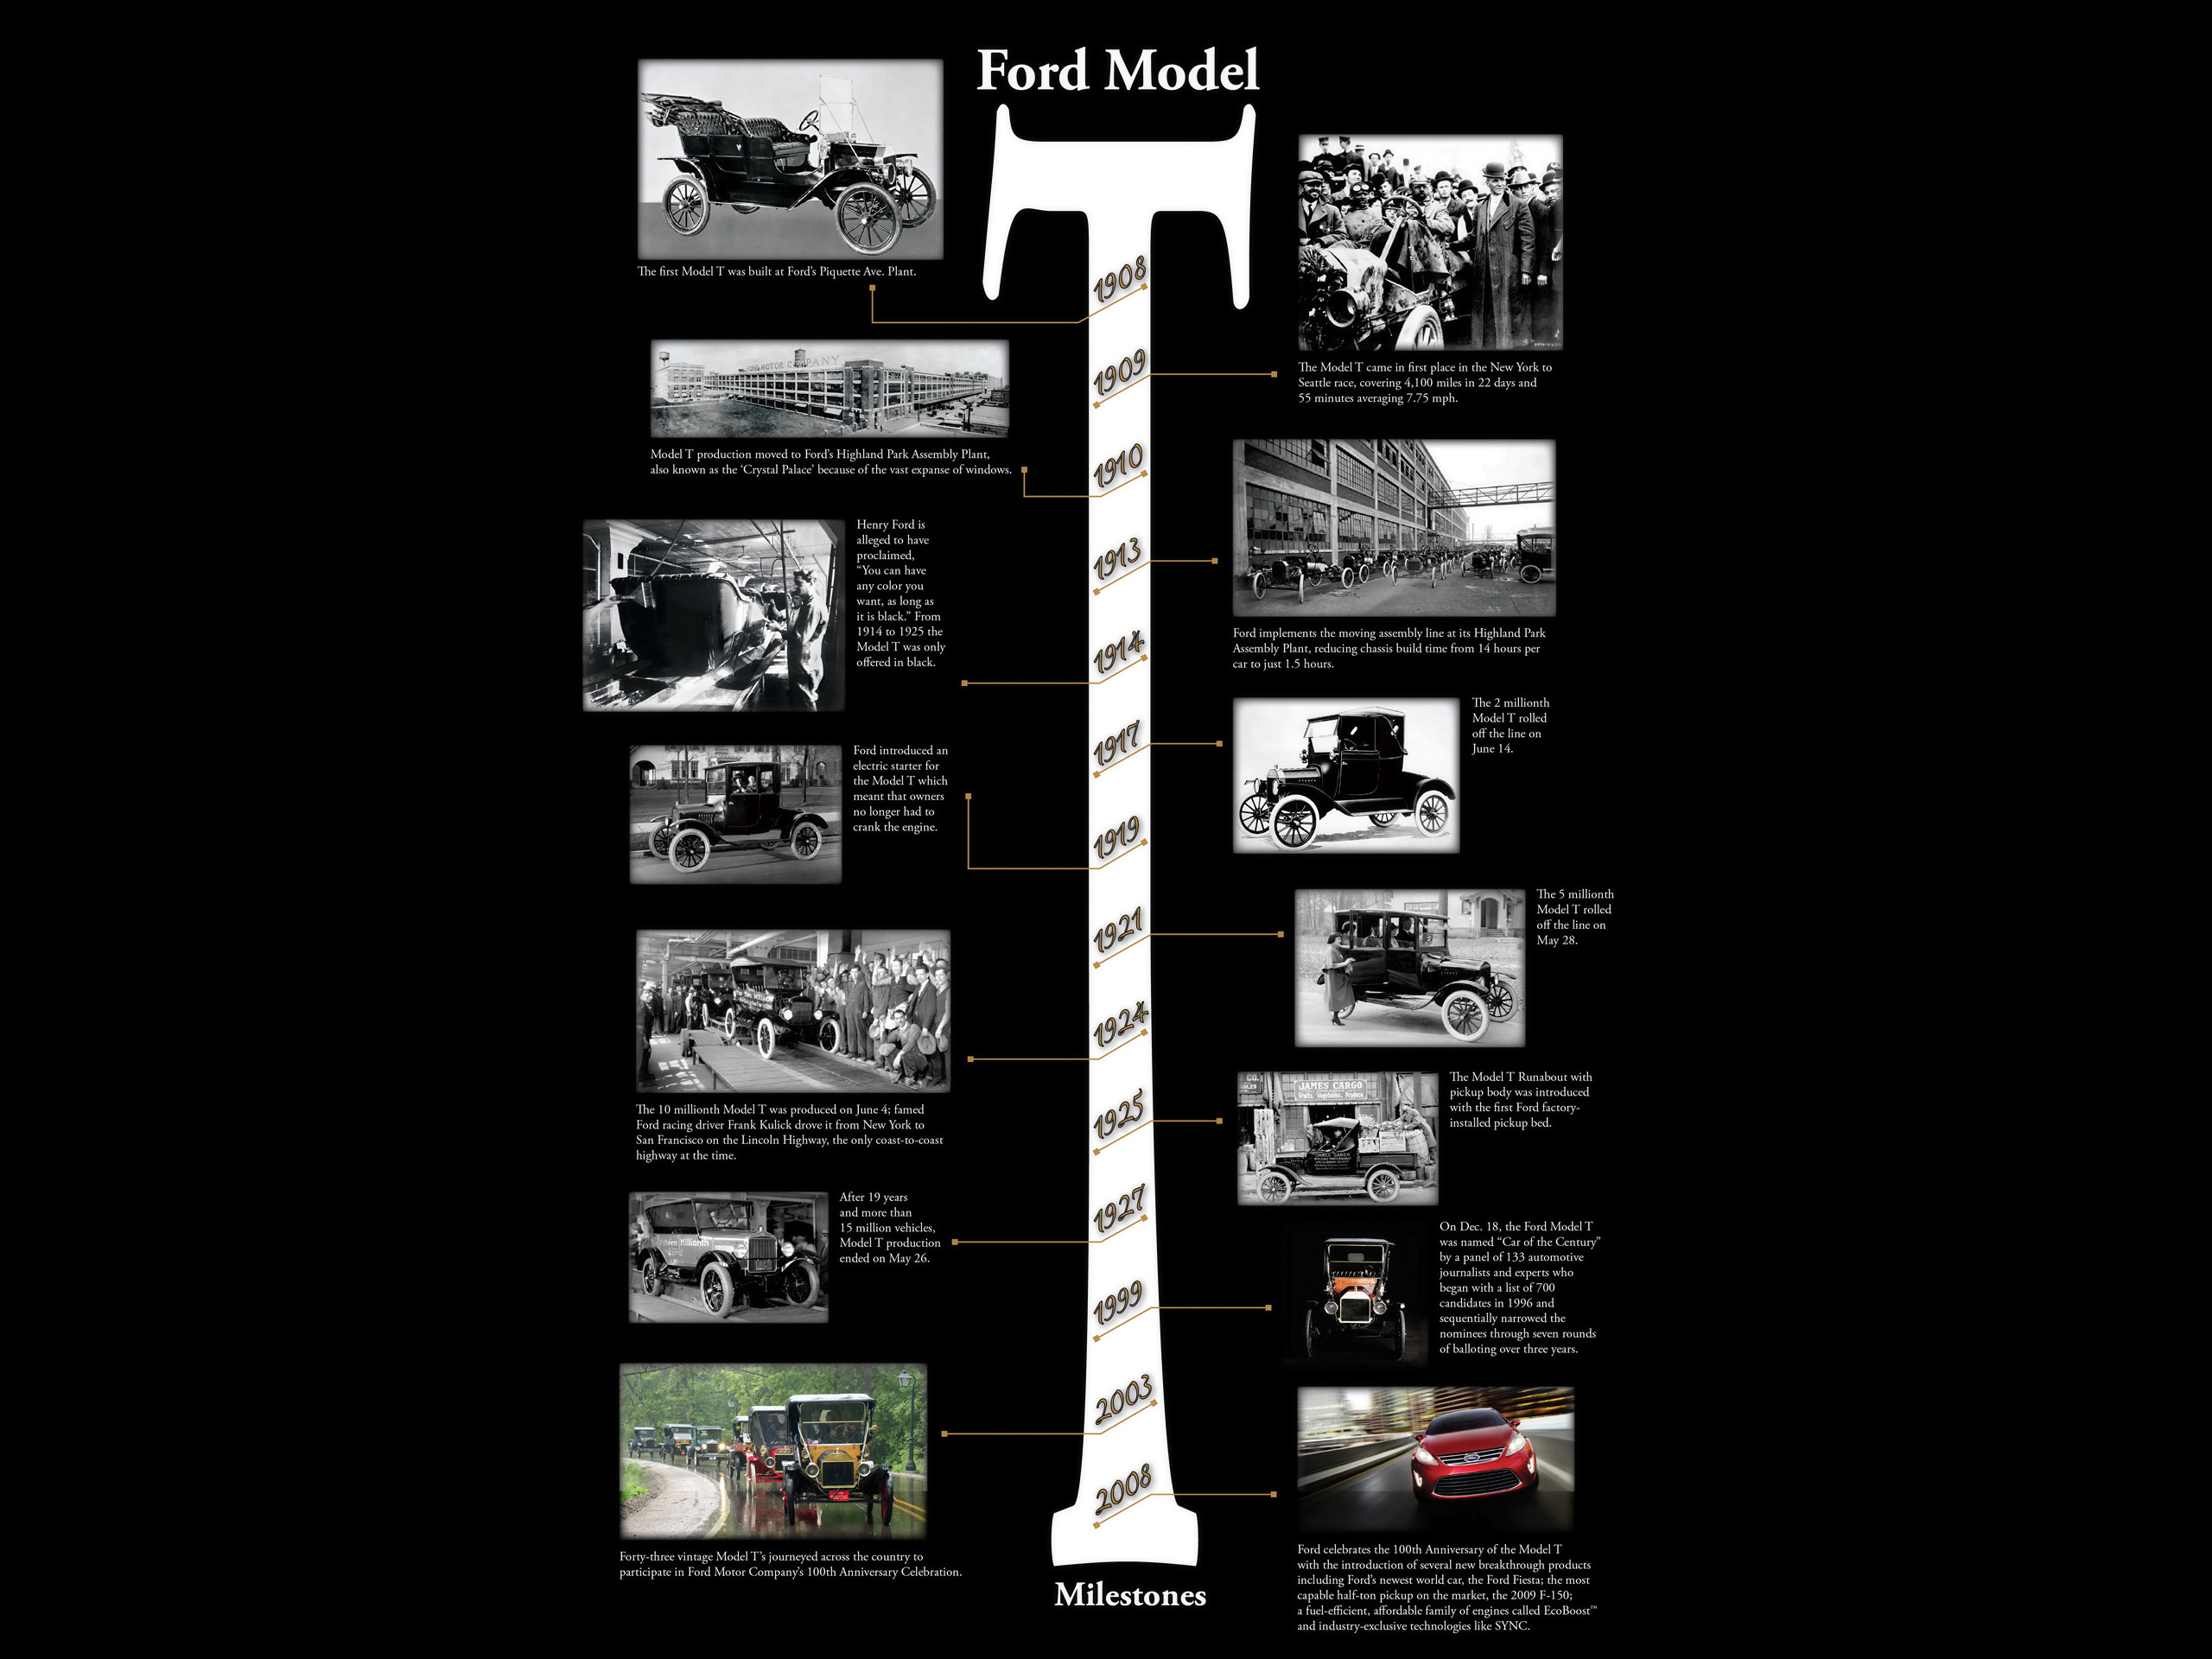 Model T Timeline - HD Wallpaper 